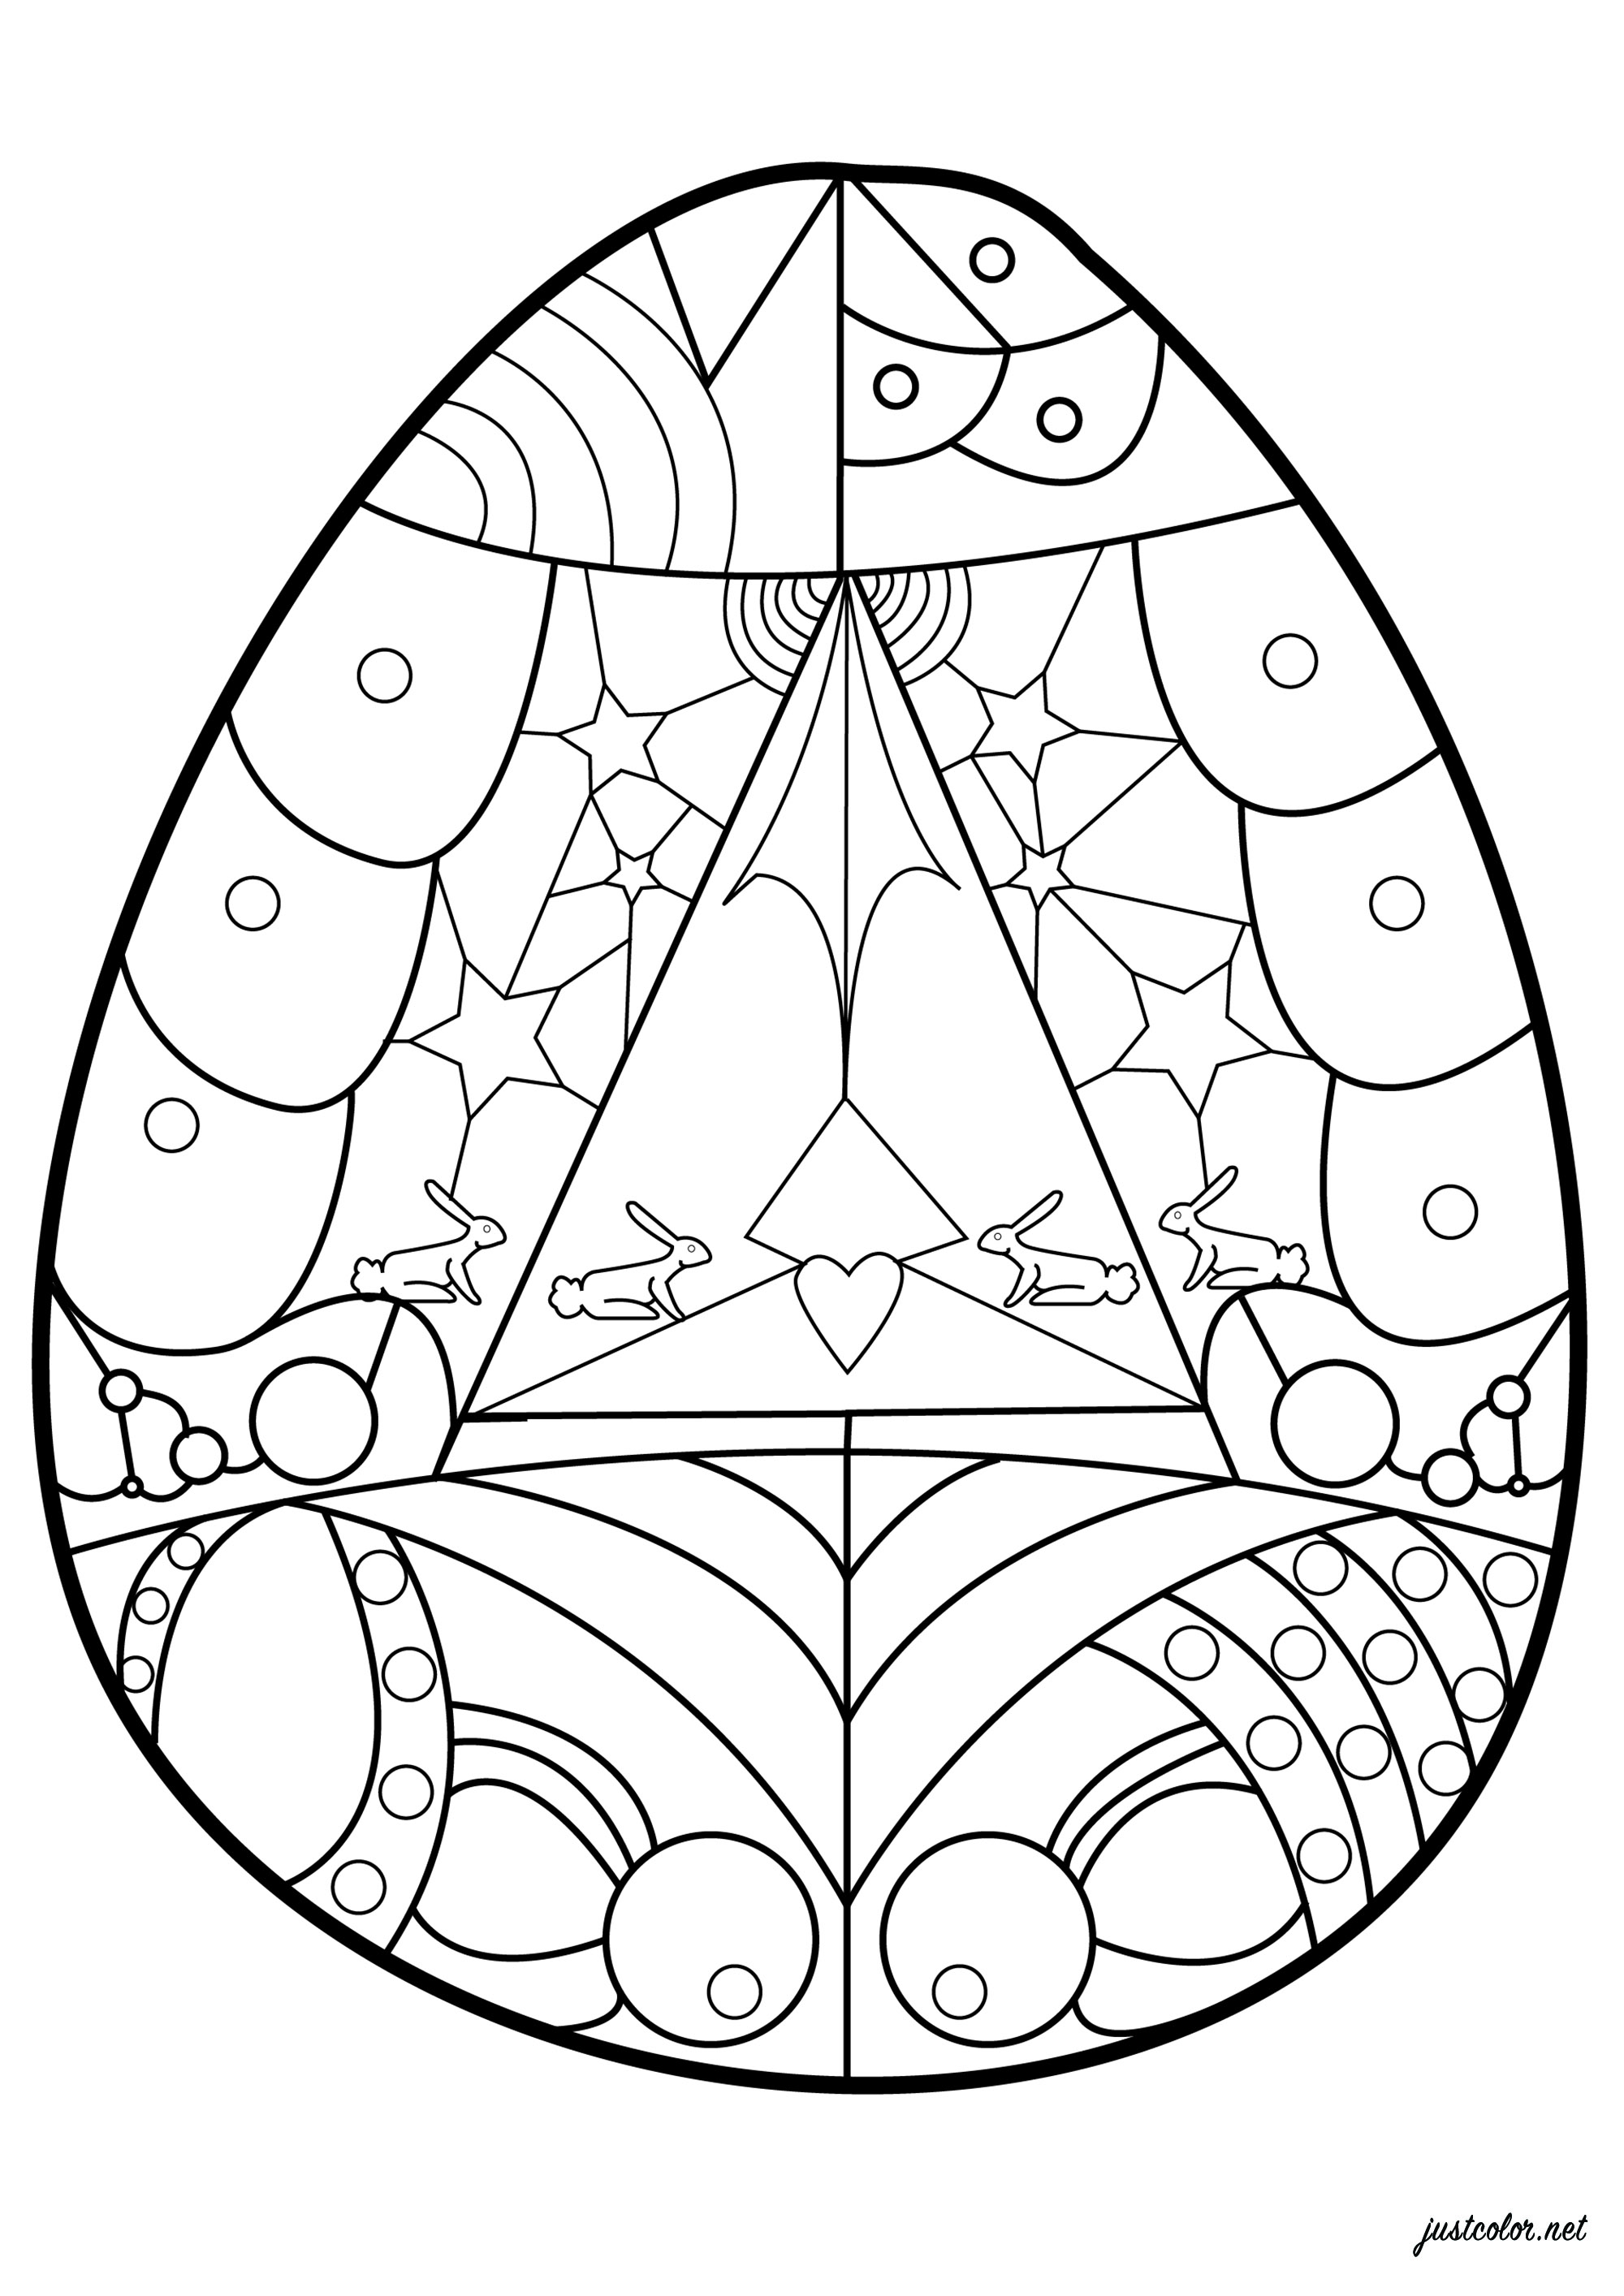 Joli Oeuf de Pâques à colorier avec des formes géométriques à l'intérieur, Artiste : Esteban